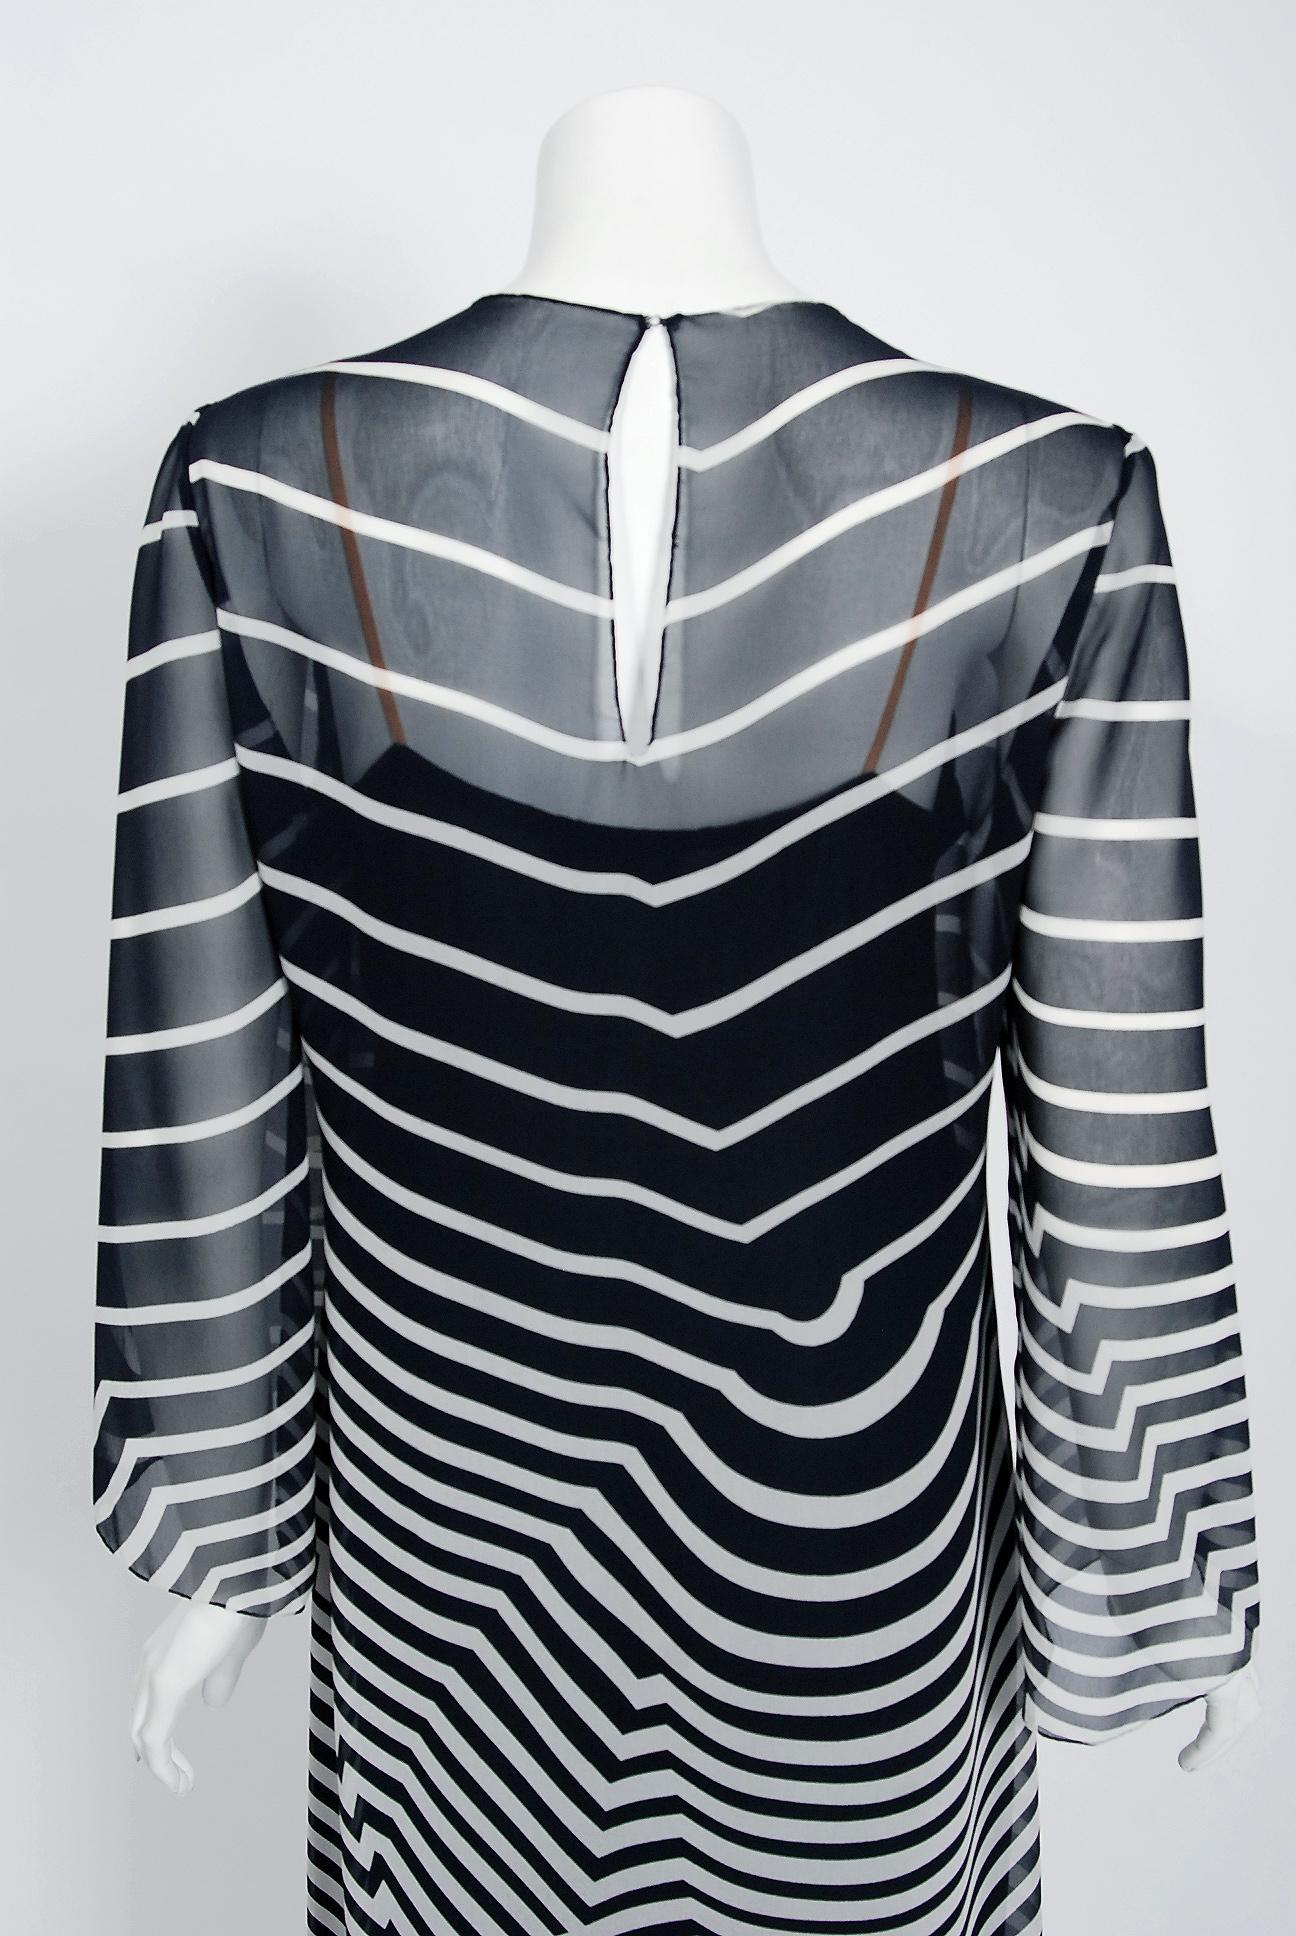 Halston Couture Black and White Graphic Illusion Silk Chiffon Maxi Dress, 1977 3